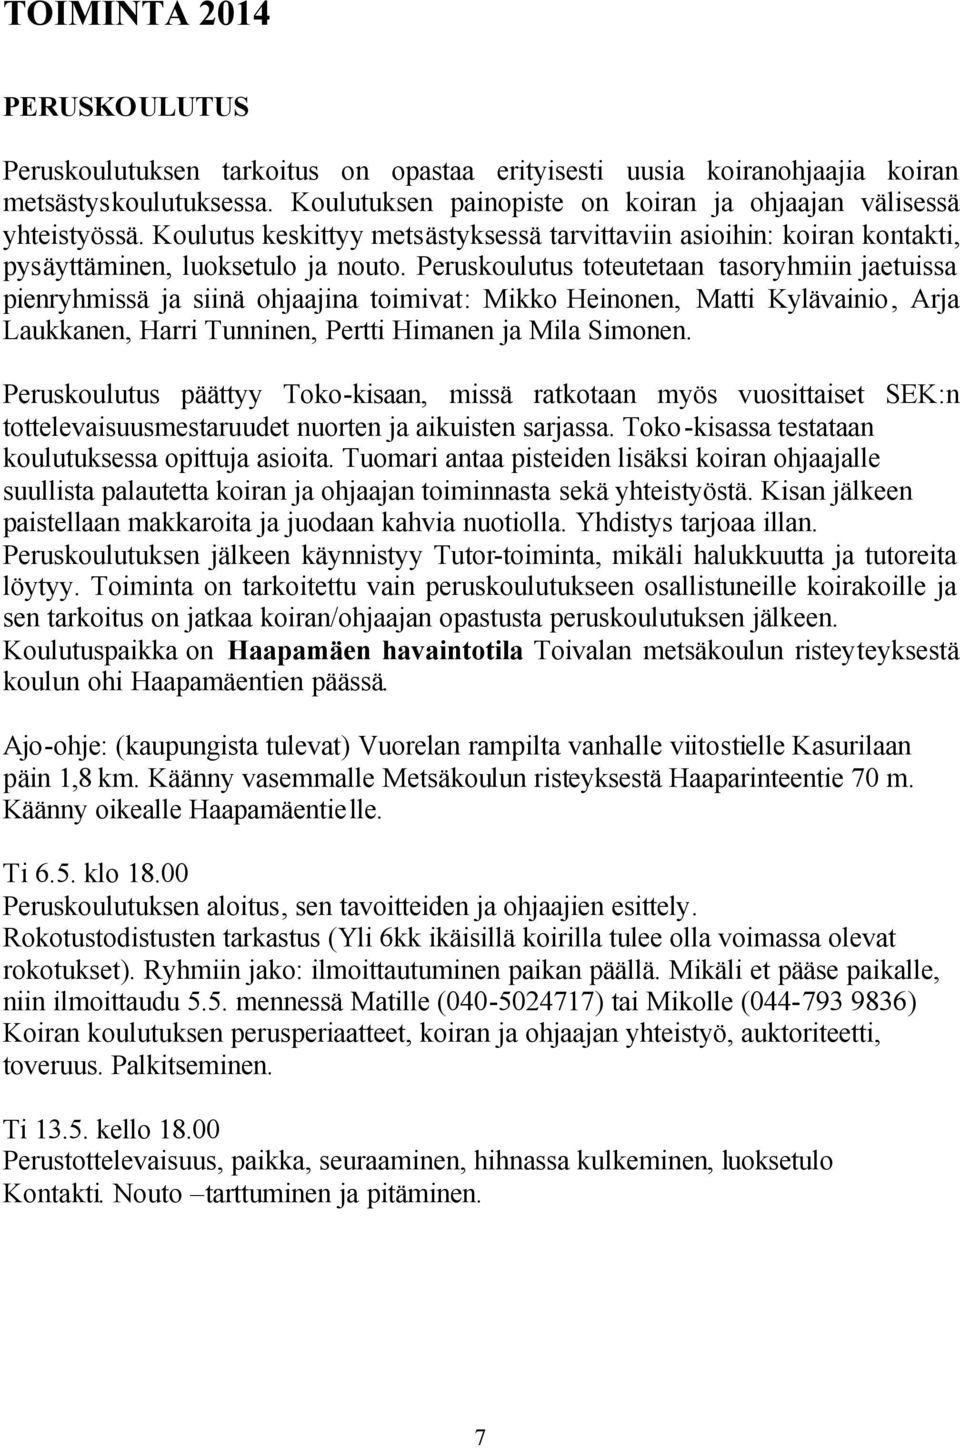 Peruskoulutus toteutetaan tasoryhmiin jaetuissa pienryhmissä ja siinä ohjaajina toimivat: Mikko Heinonen, Matti Kylävainio, Arja Laukkanen, Harri Tunninen, Pertti Himanen ja Mila Simonen.